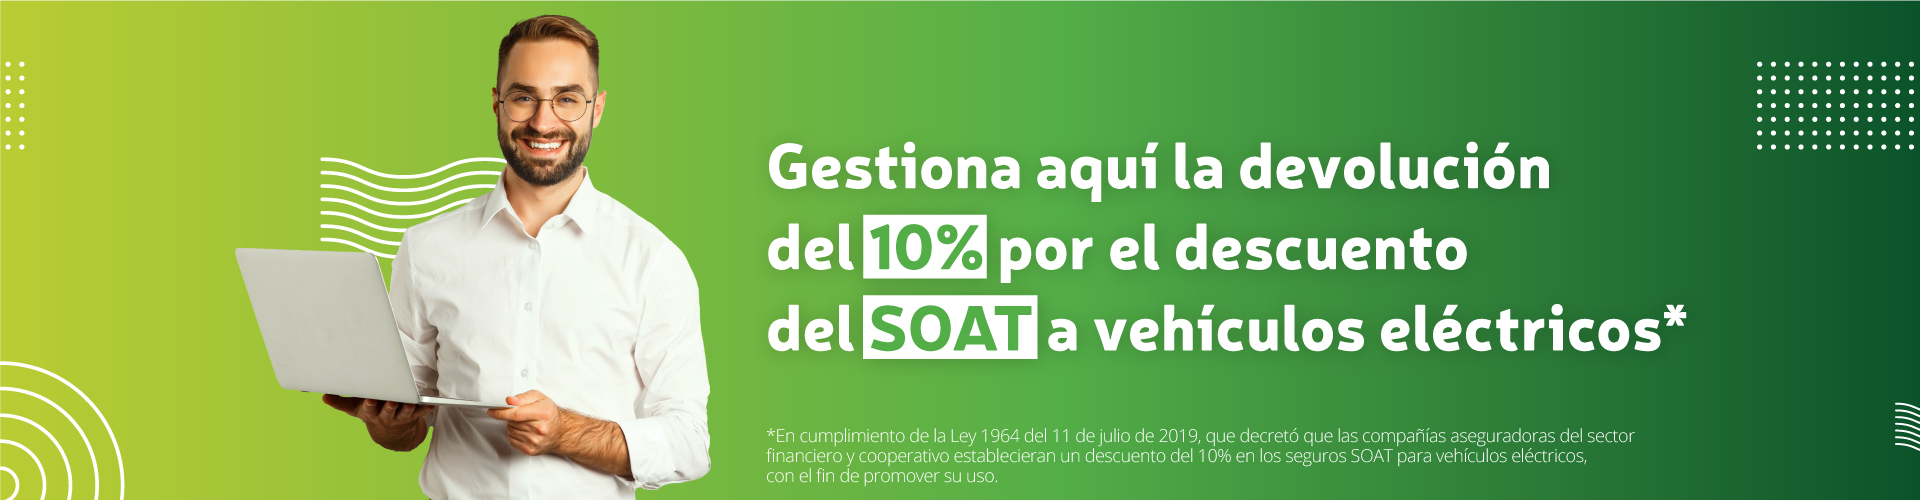 Gestiona aquí la devolución del 10% por el descuento del SOAT a vehículos eléctricos